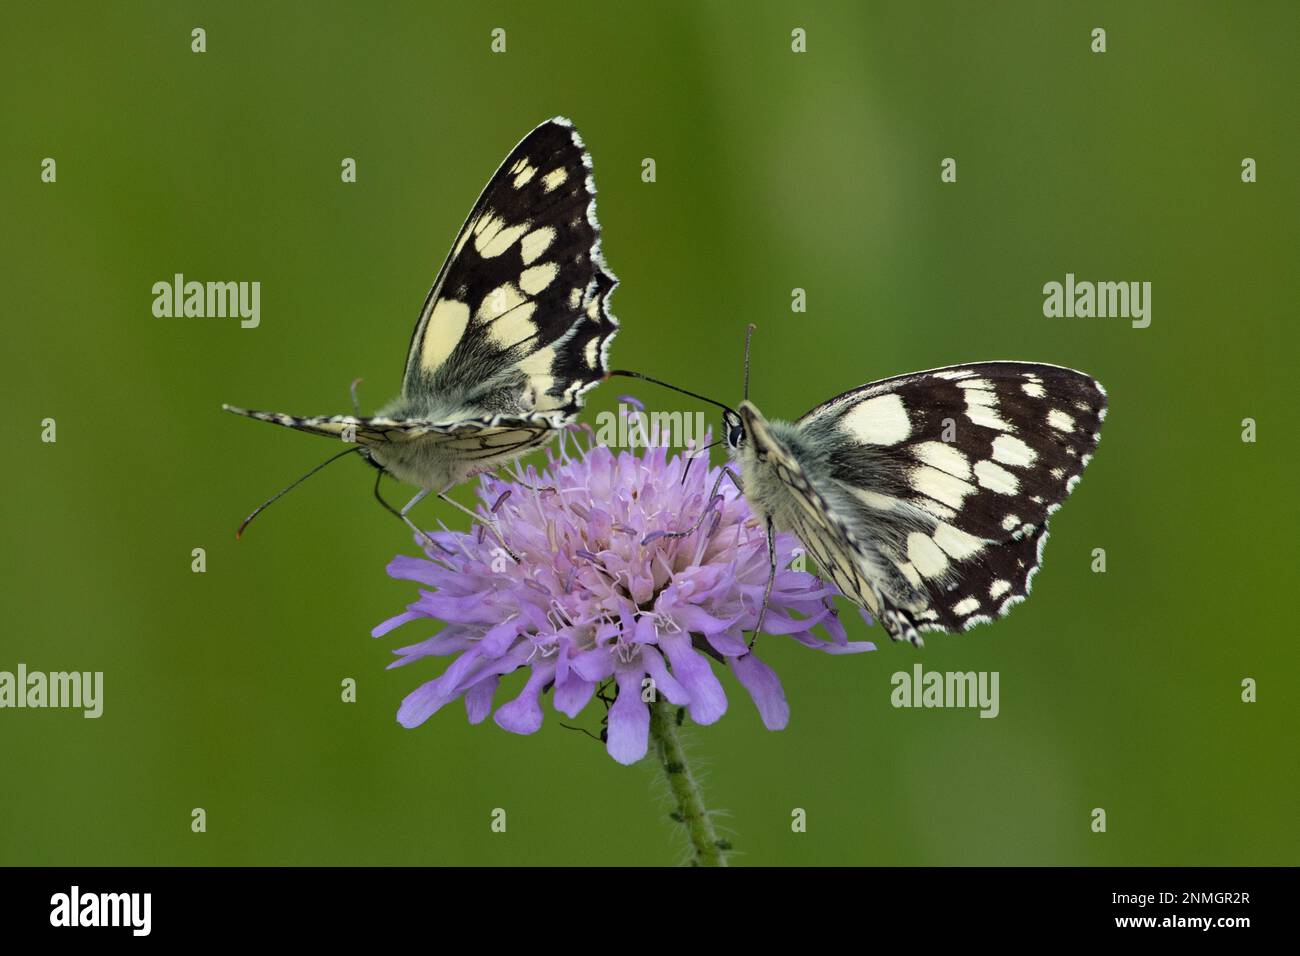 Schachbrett zwei Schmetterlinge mit offenen Flügeln, die auf lila Blüten sitzen und nach links sehen Stockfoto